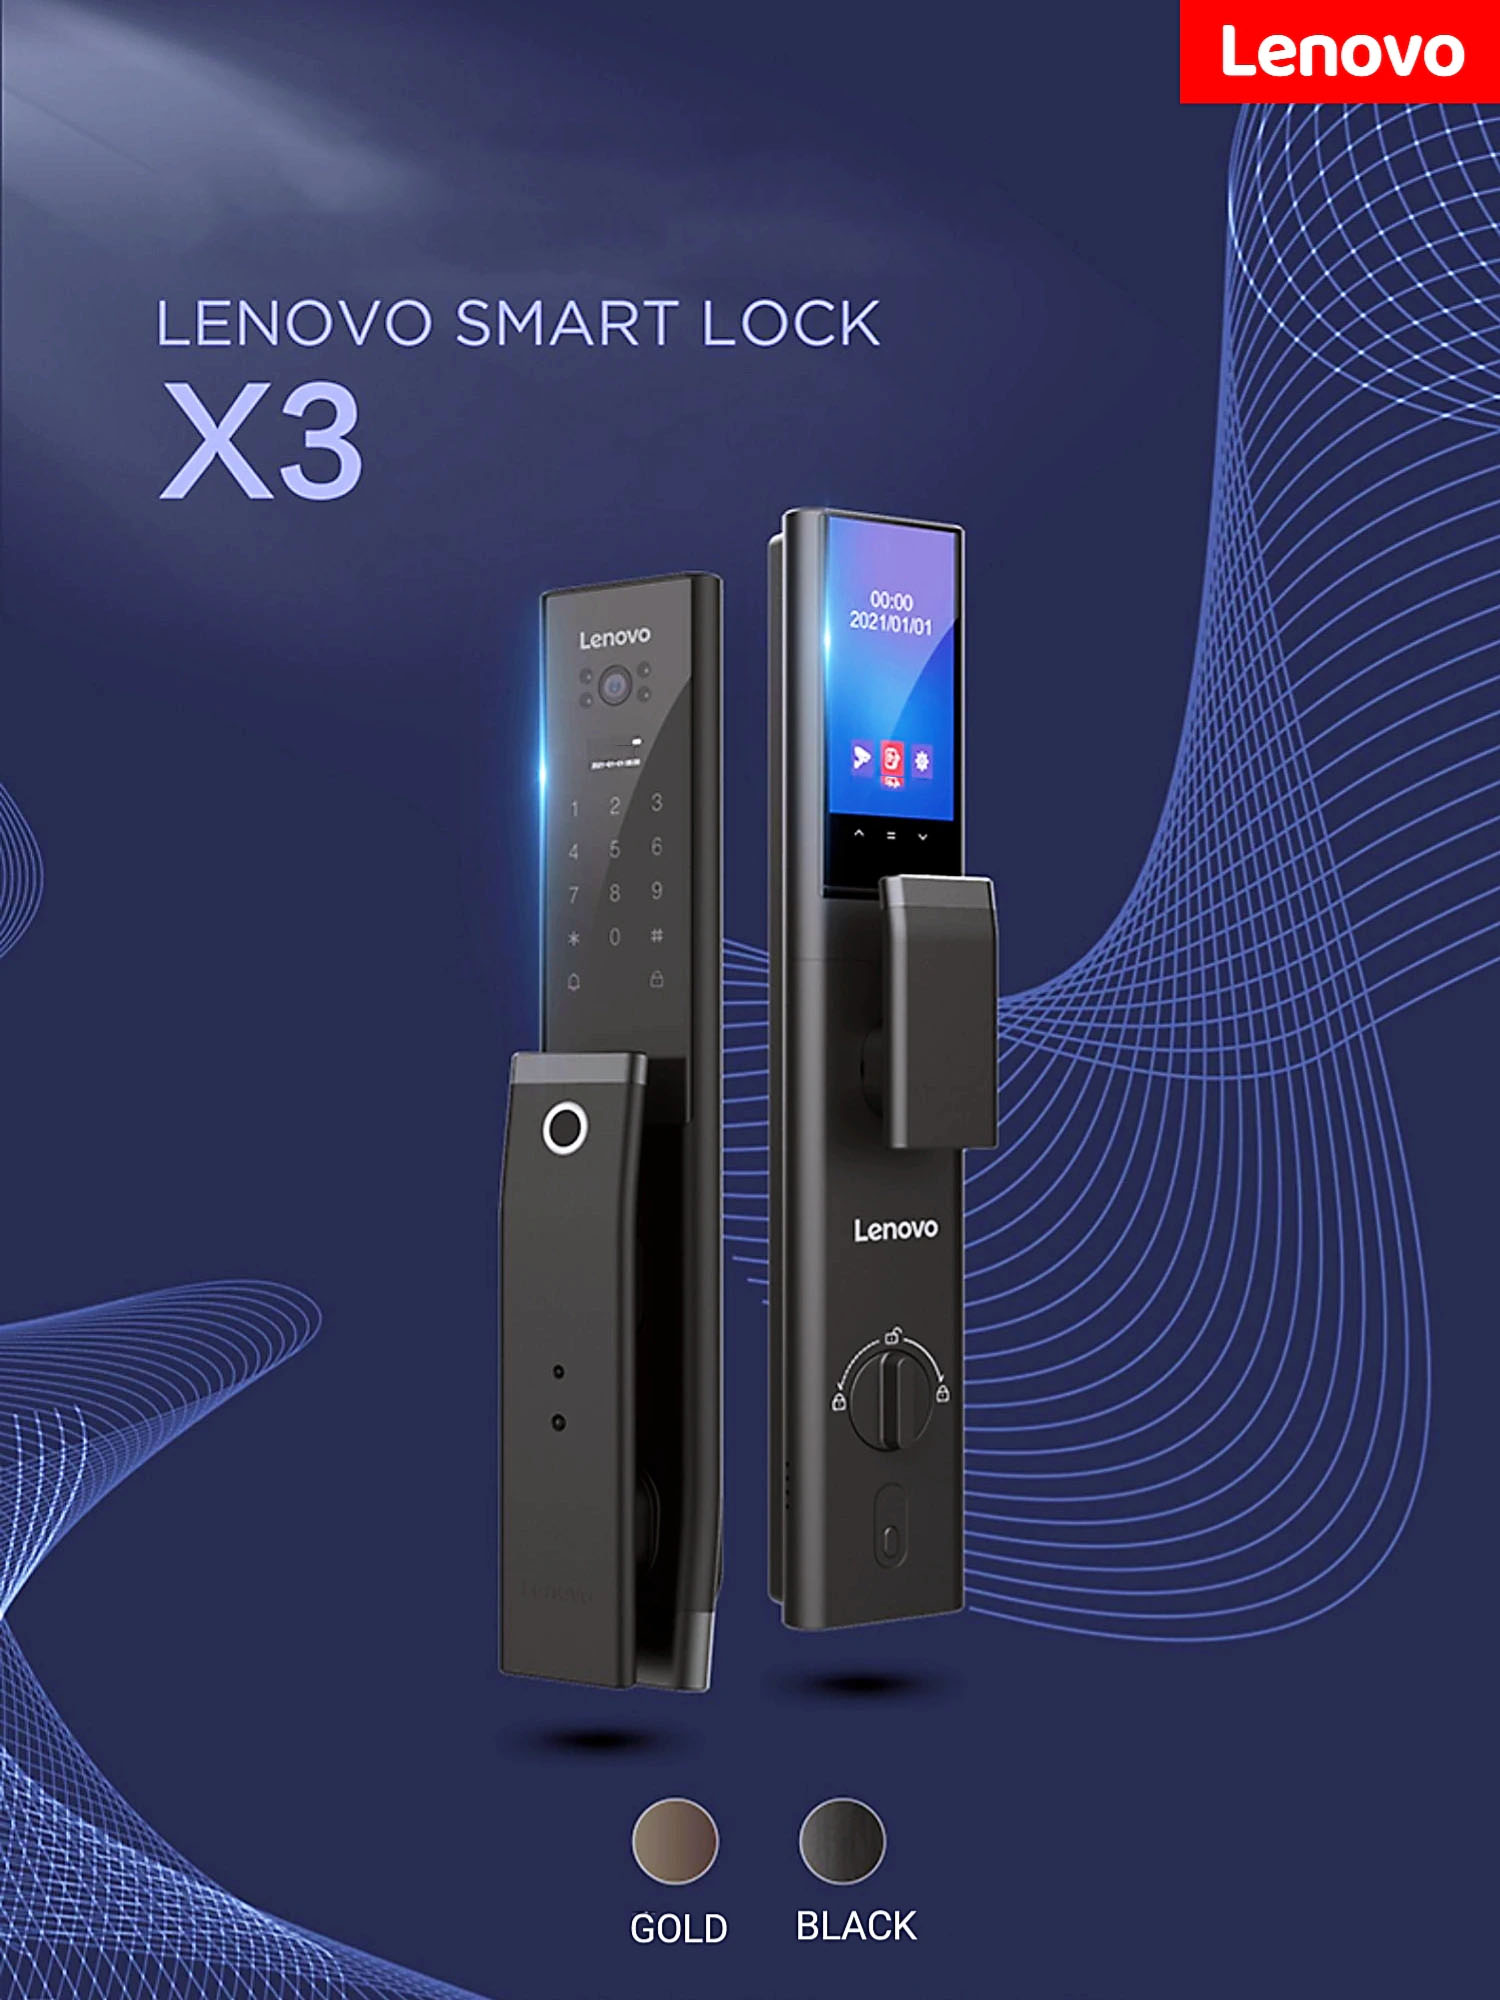 khoa van tay Lenovo x3